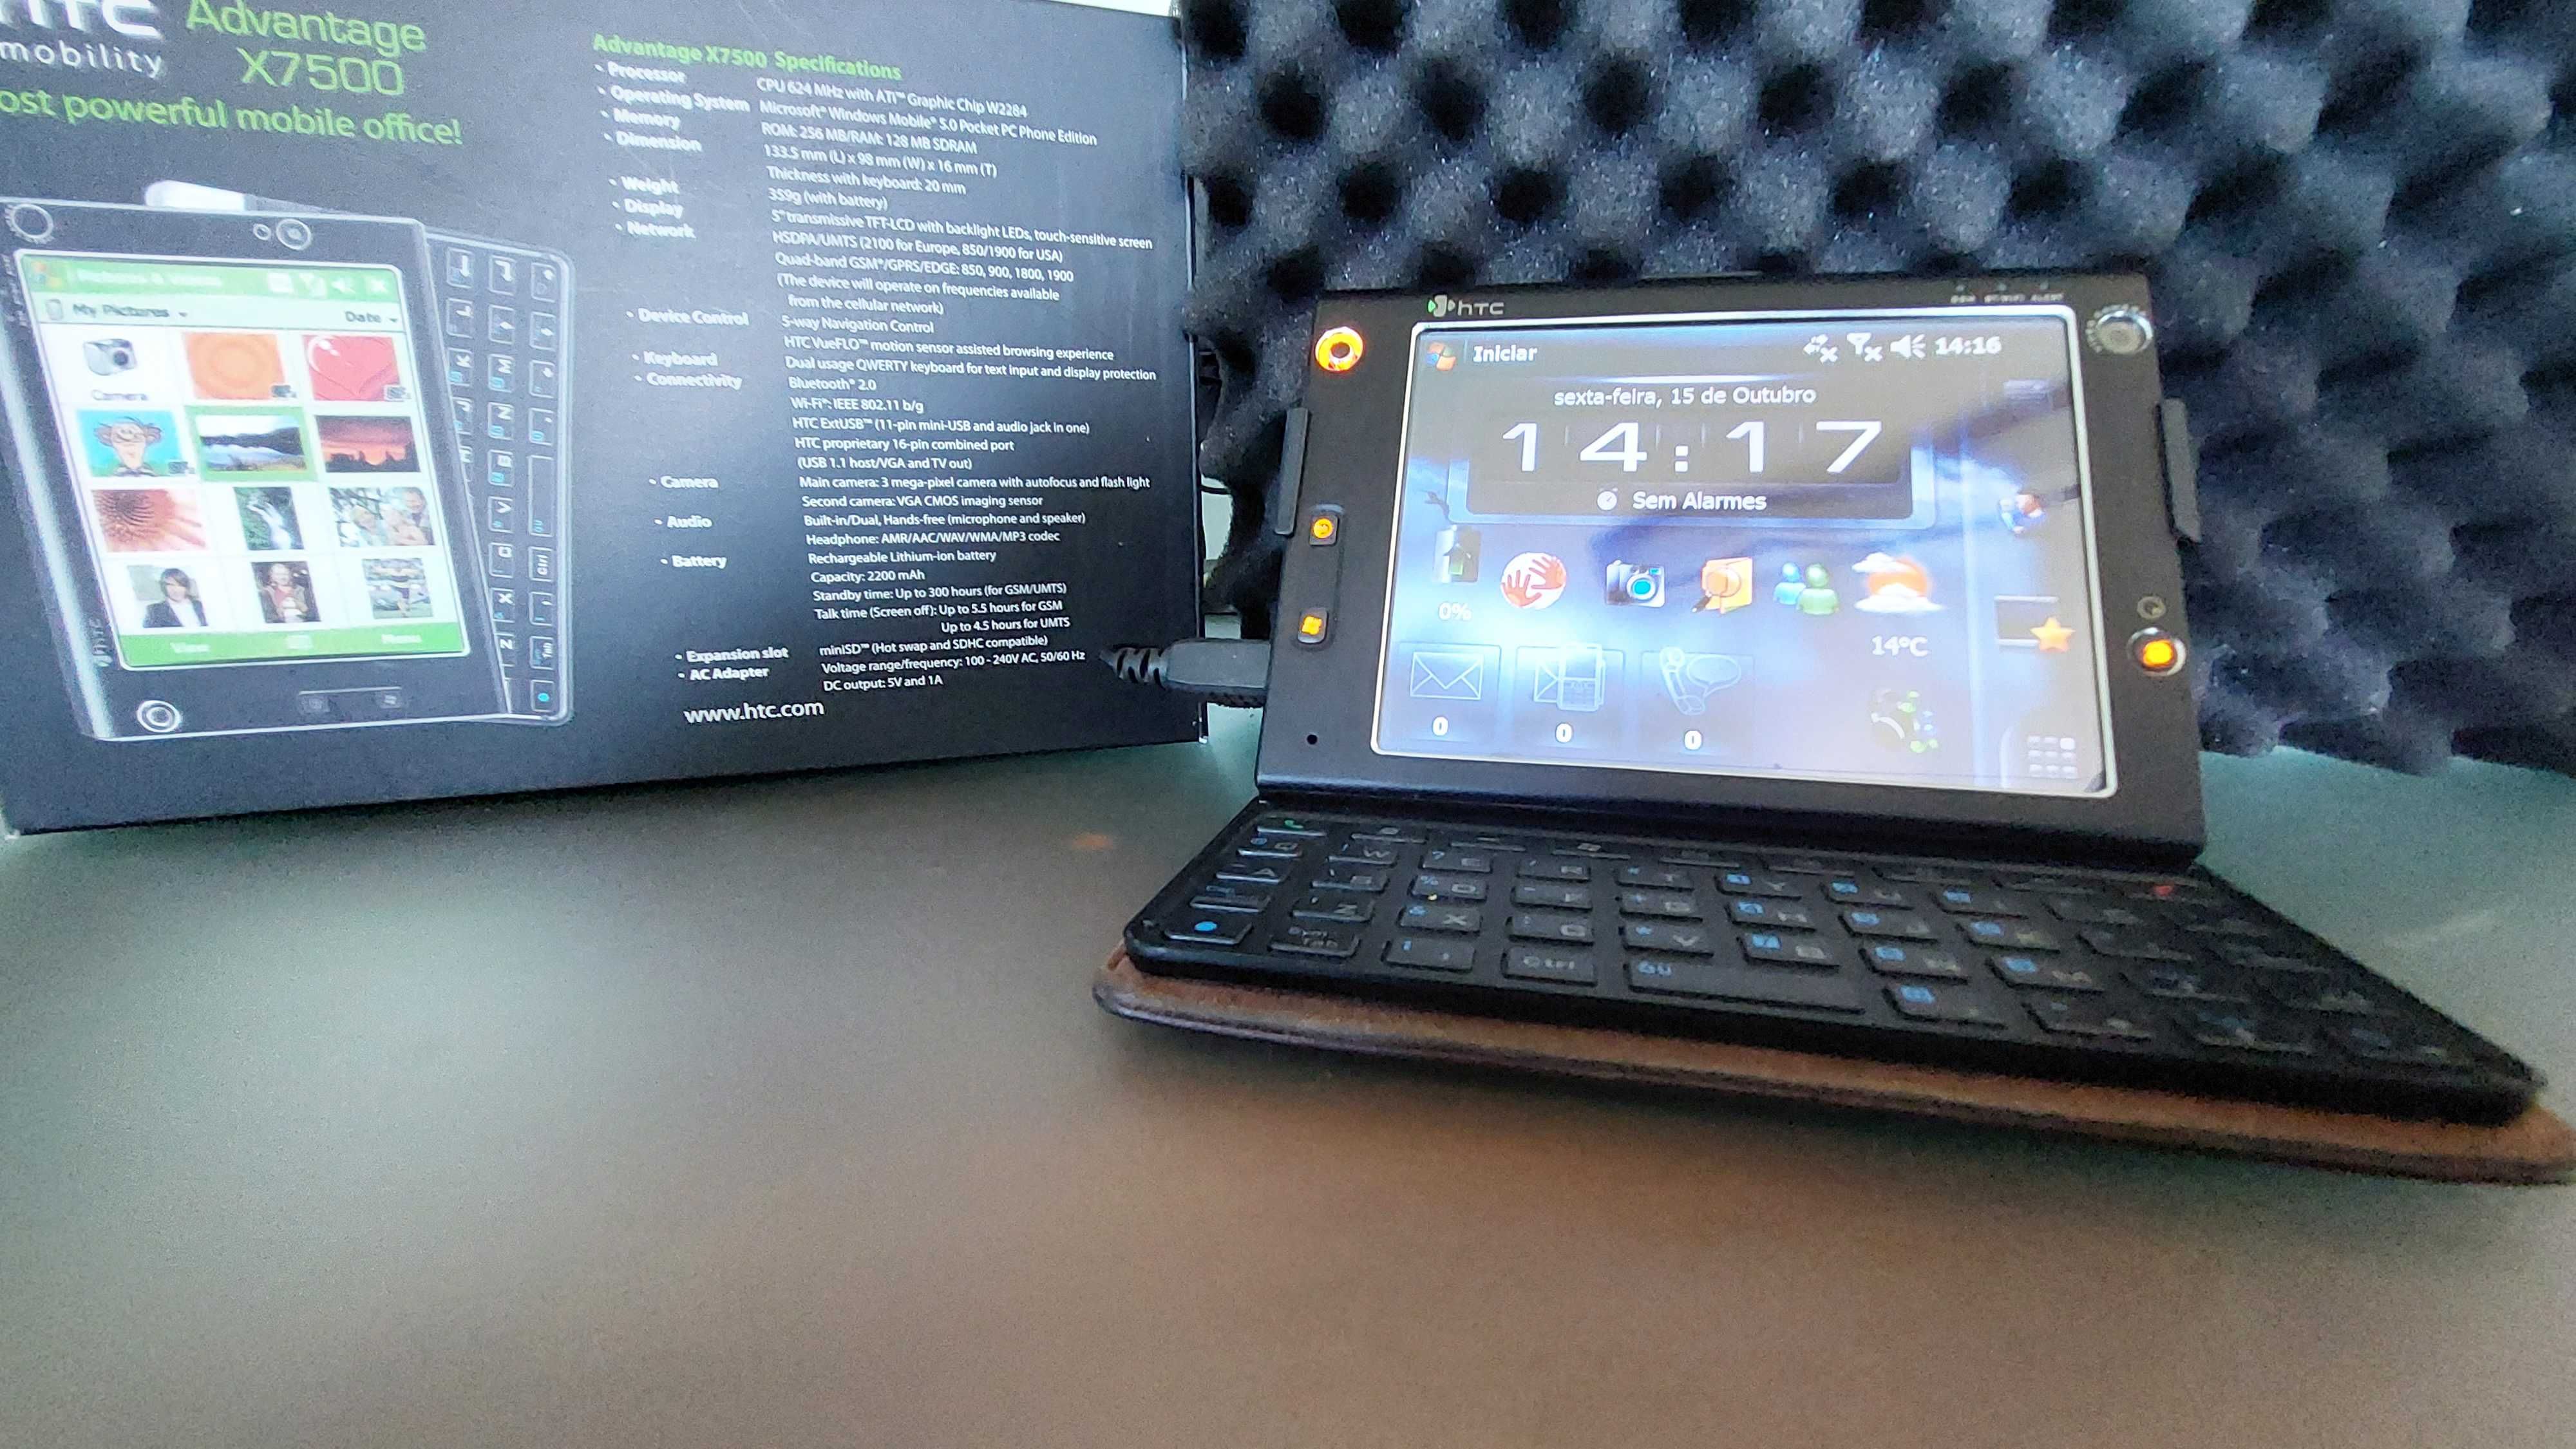 HTC Advantage X7500 . Pocket PC Phone Edition . Raro  . Coleção